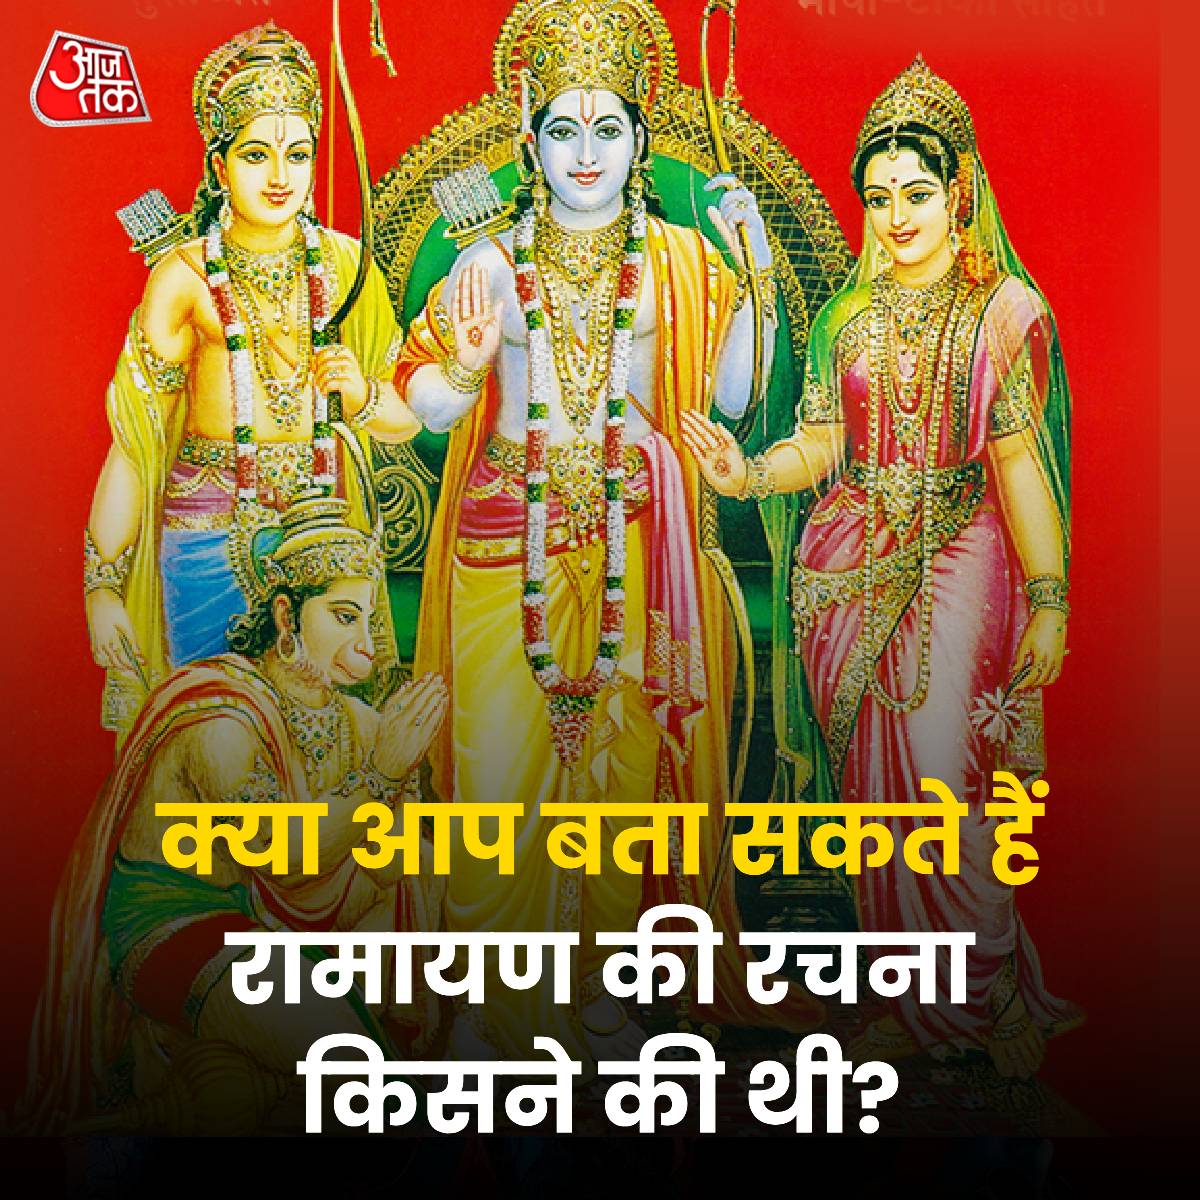 रामनवमी के पावन मौके पर क्या आप बता सकते हैं कि रामायण की रचना किसने की थी? 

#RamNavami #Ayodhya #RamLalla #RamNavami2024 #RamMandir #Ayodhya #SuryaTilak #RamLallaSuryaTilak #Ramayan #ATYourSpace #TalkToUs #Quiz